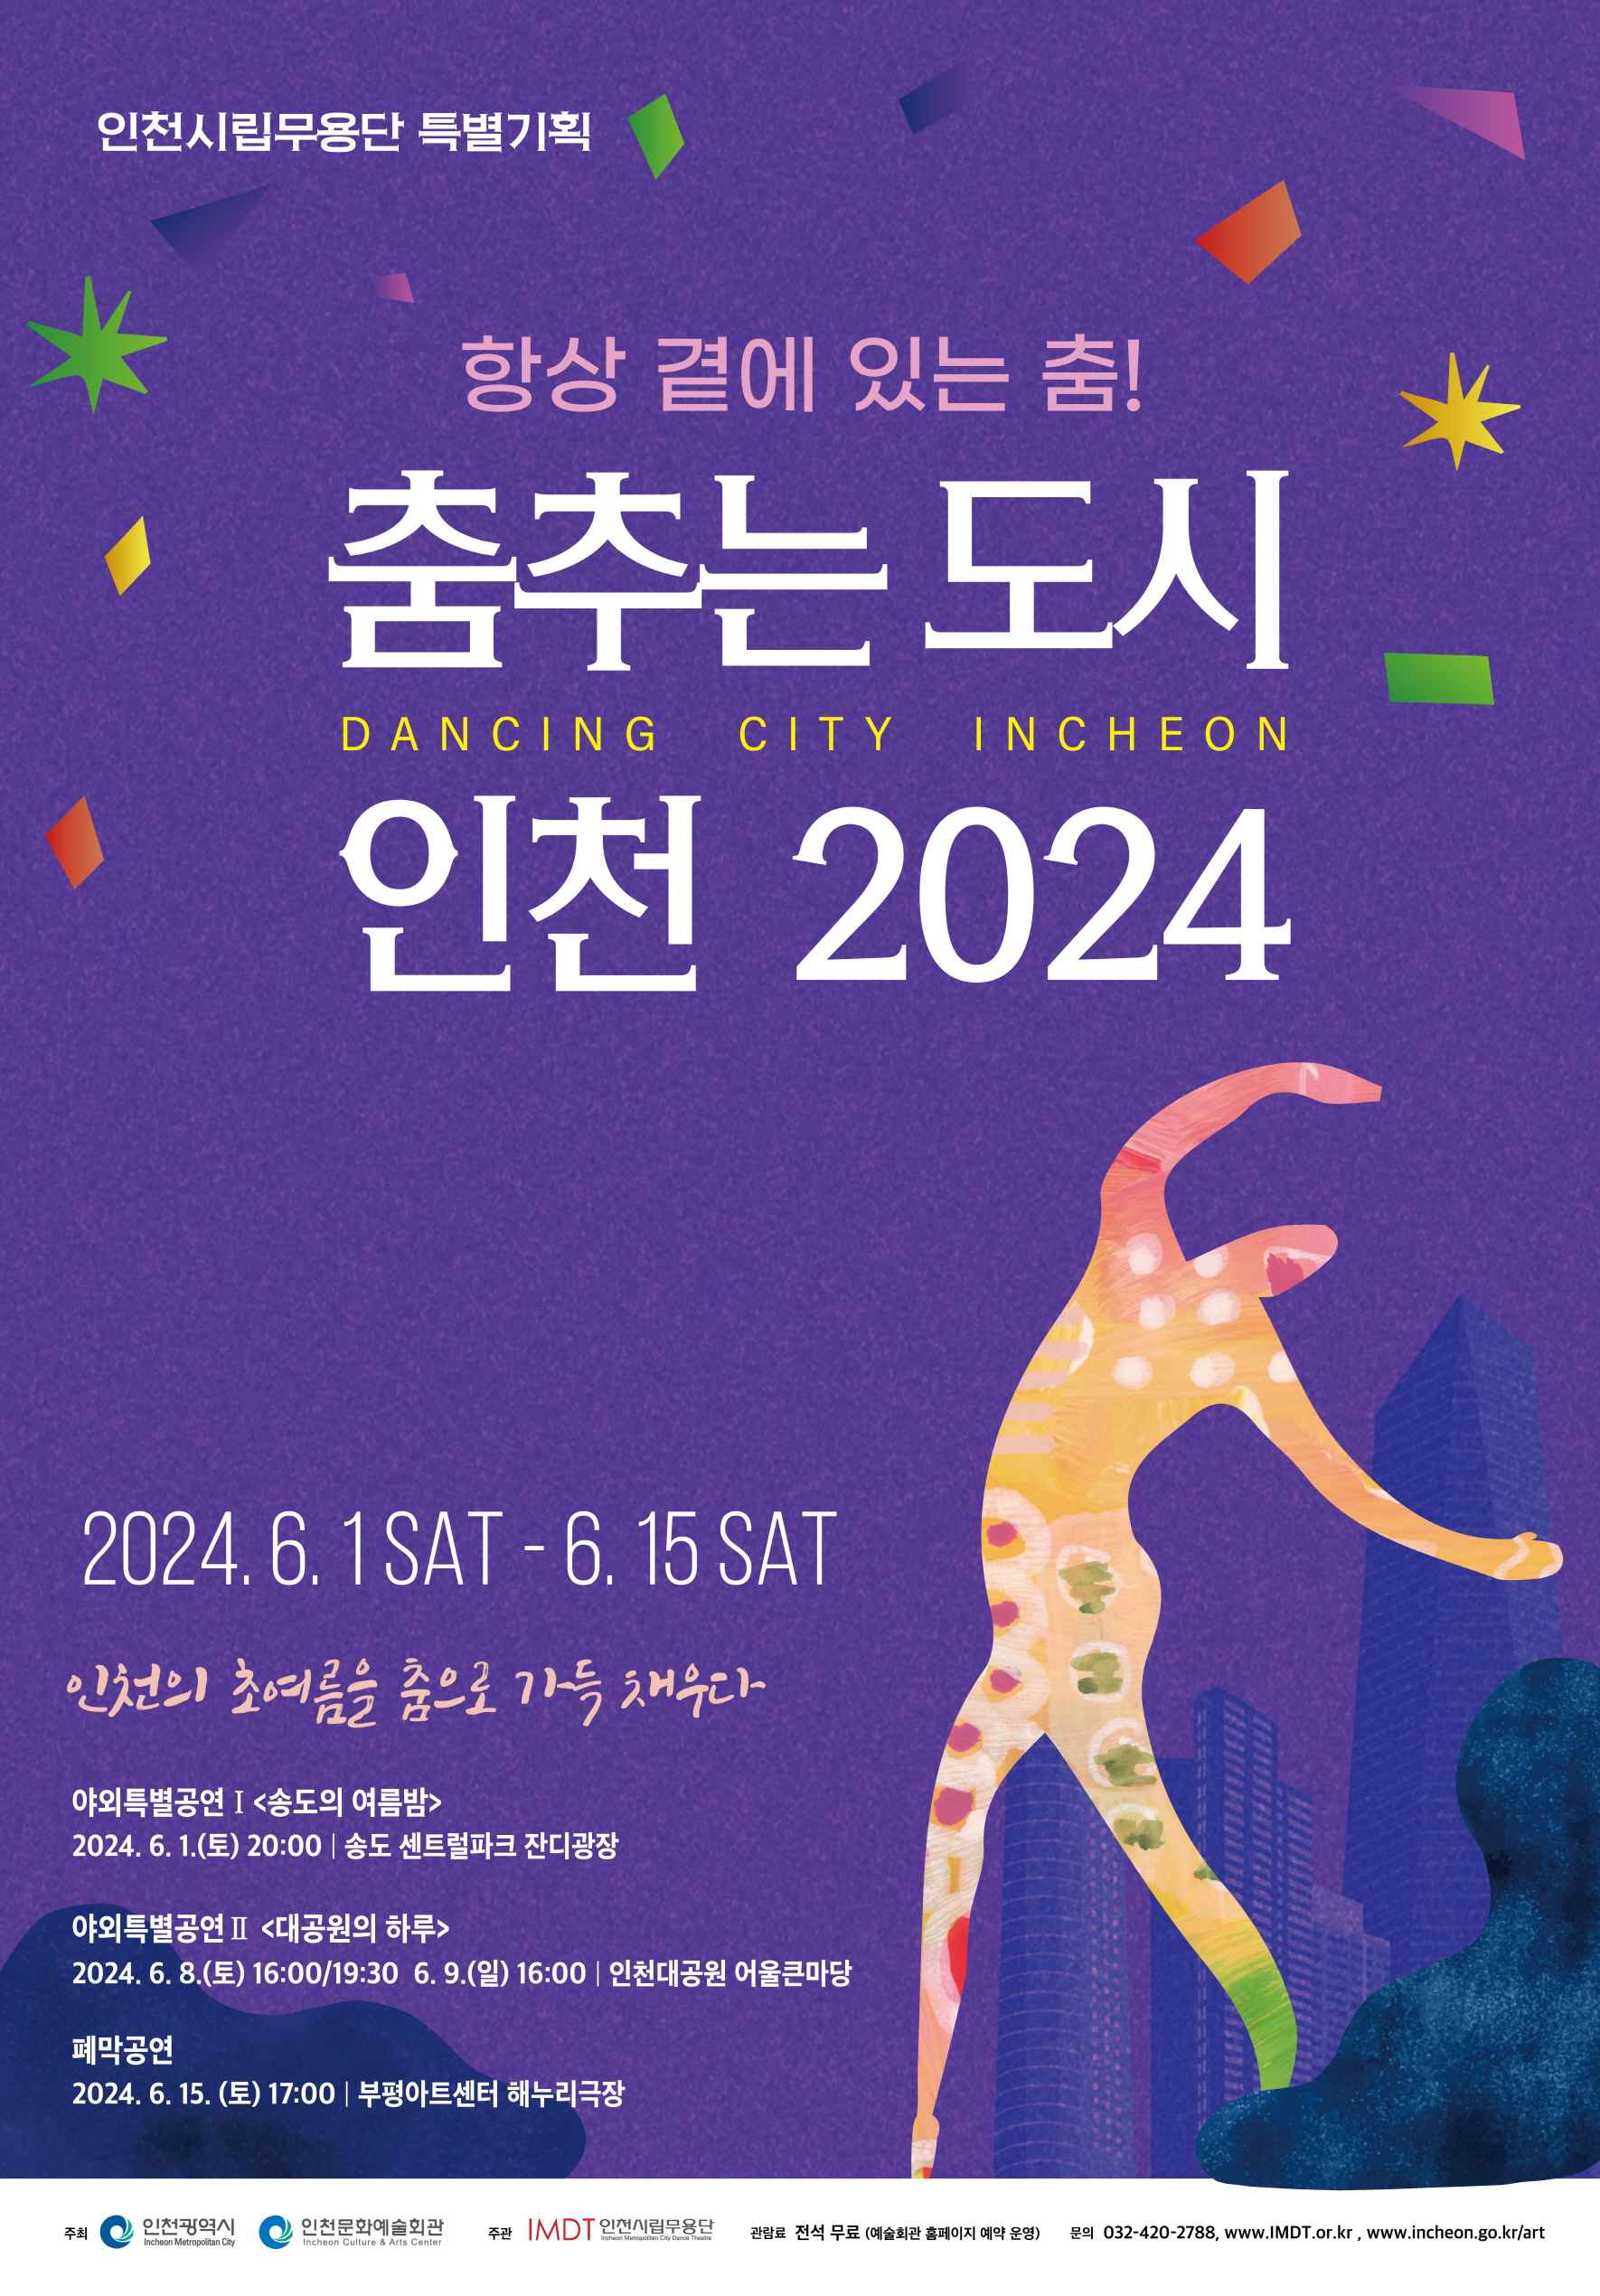 인천시립무용단 「춤추는 도시 인천 2024」 야외특별공연 안내의 1번째 이미지